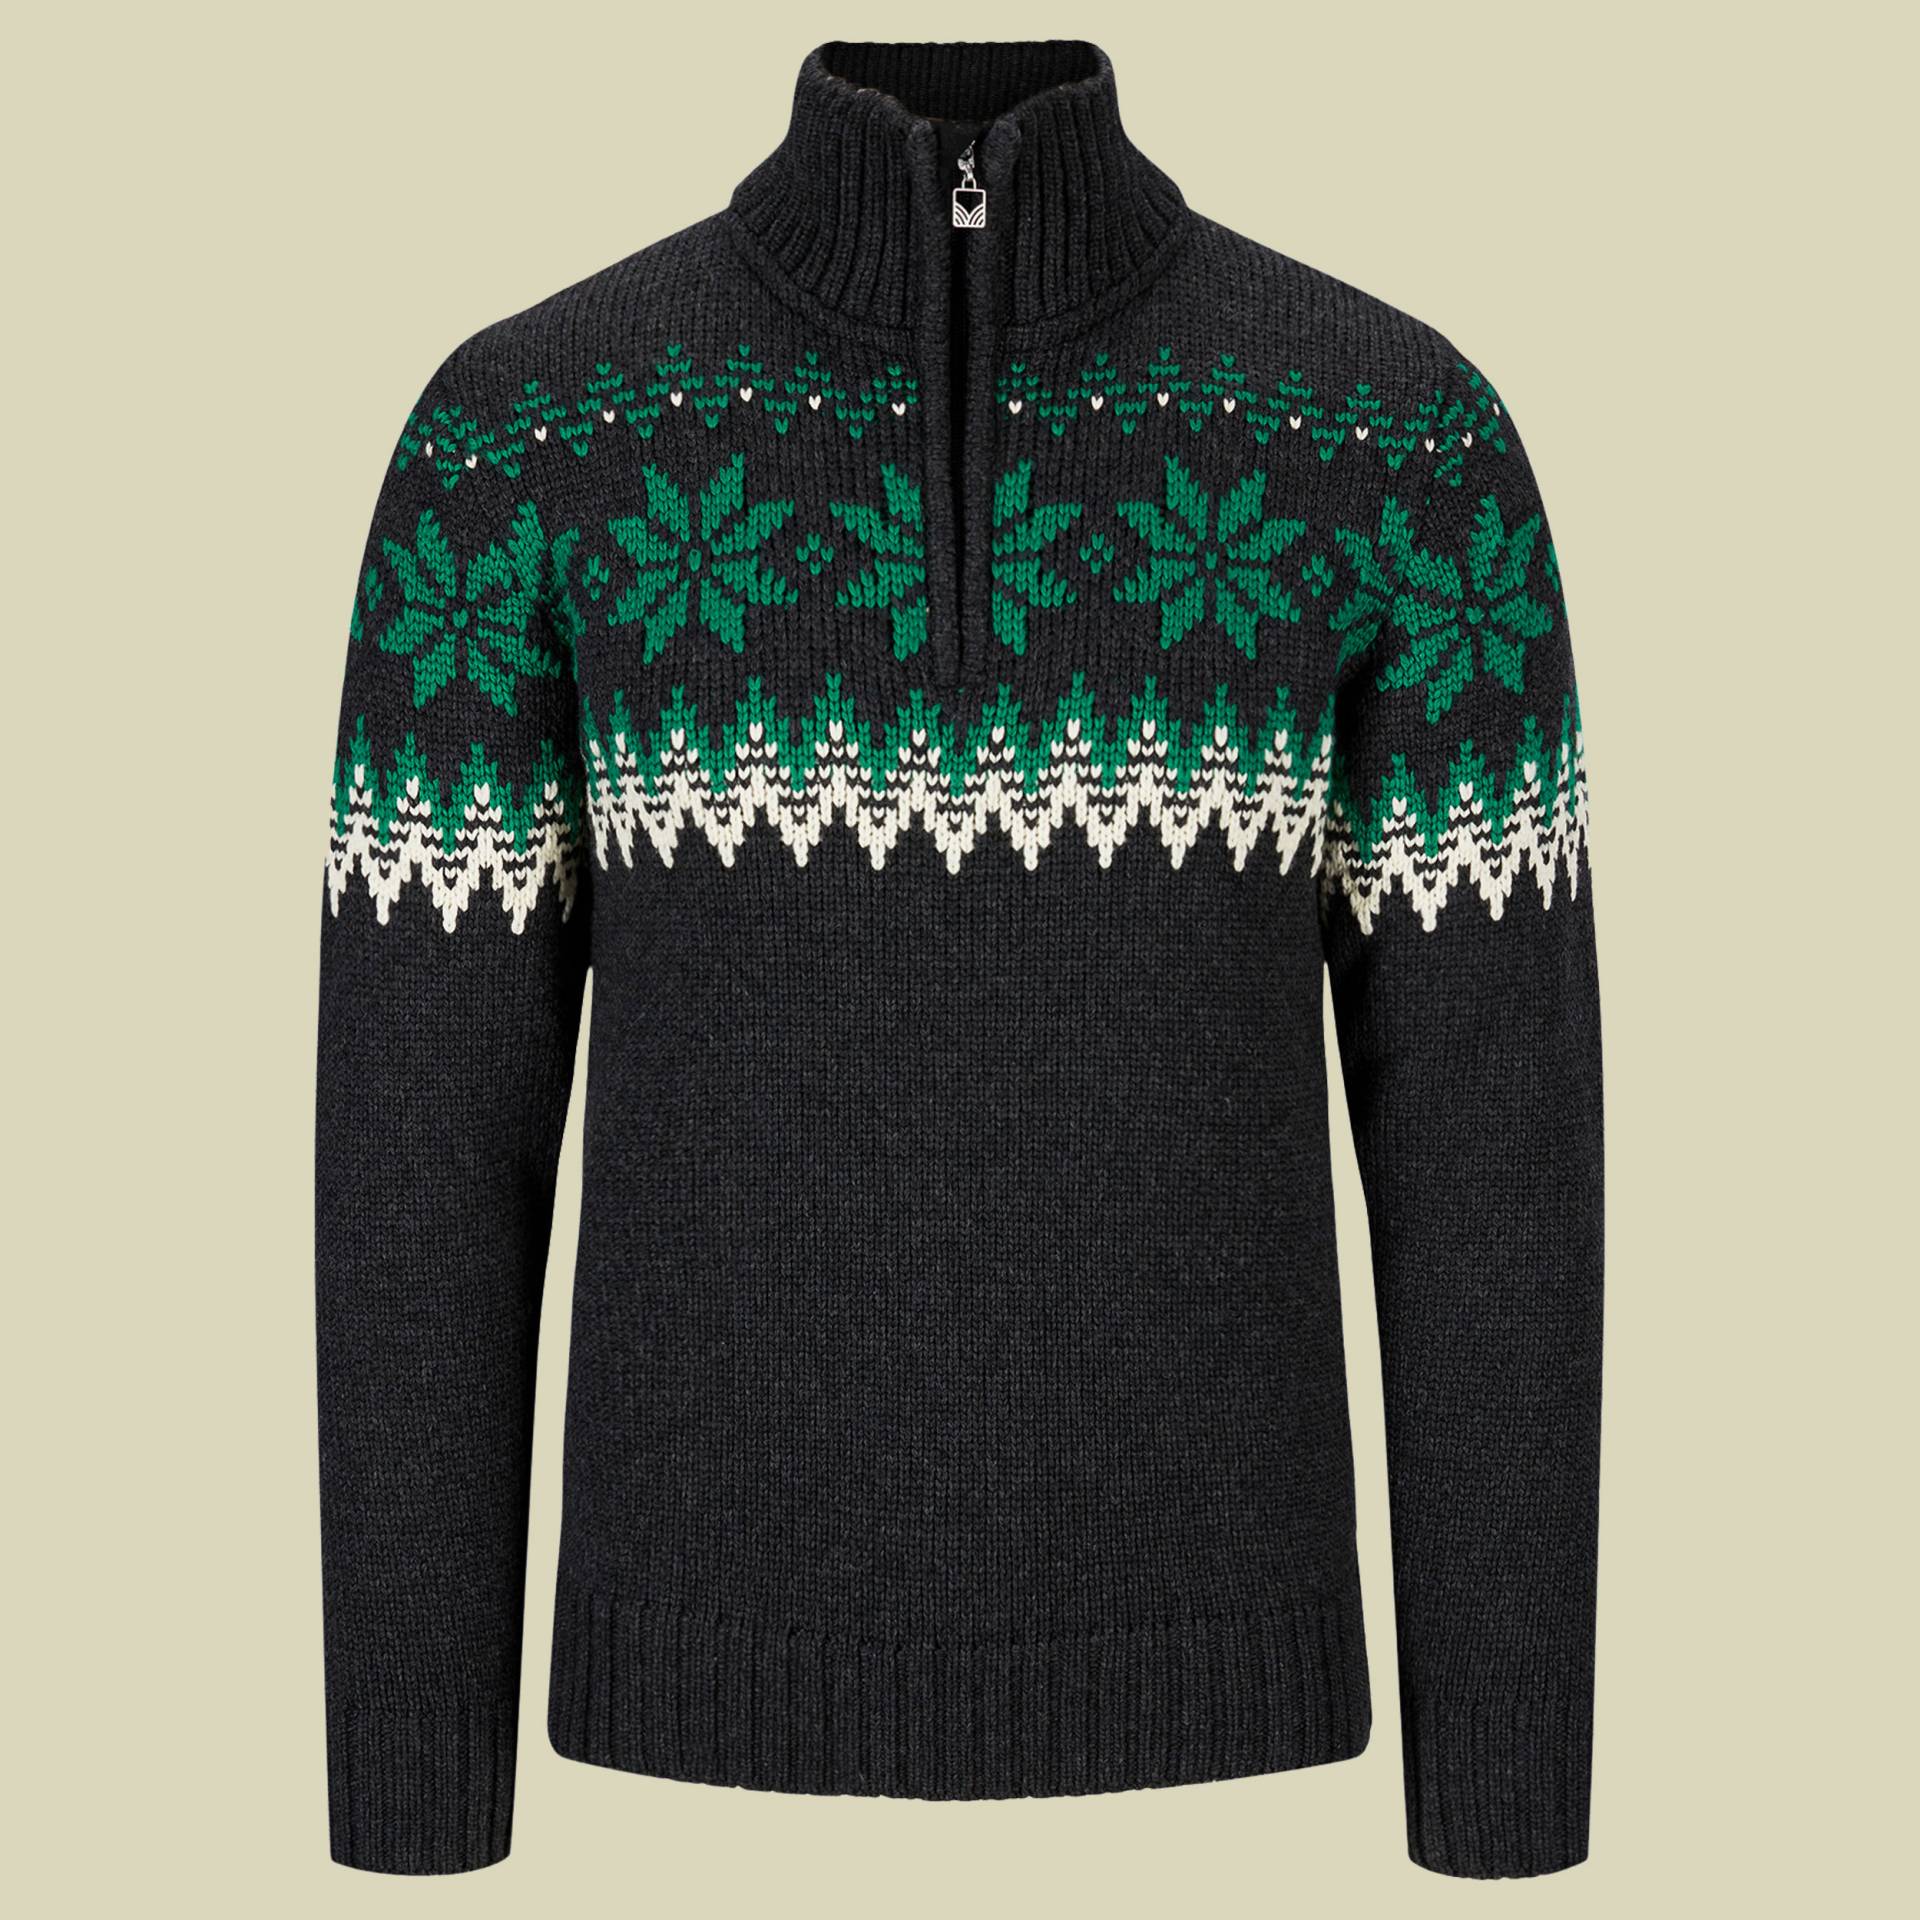 Myking Sweater Men Größe XL Farbe dark charcoal/bright green/off white von Dale of Norway